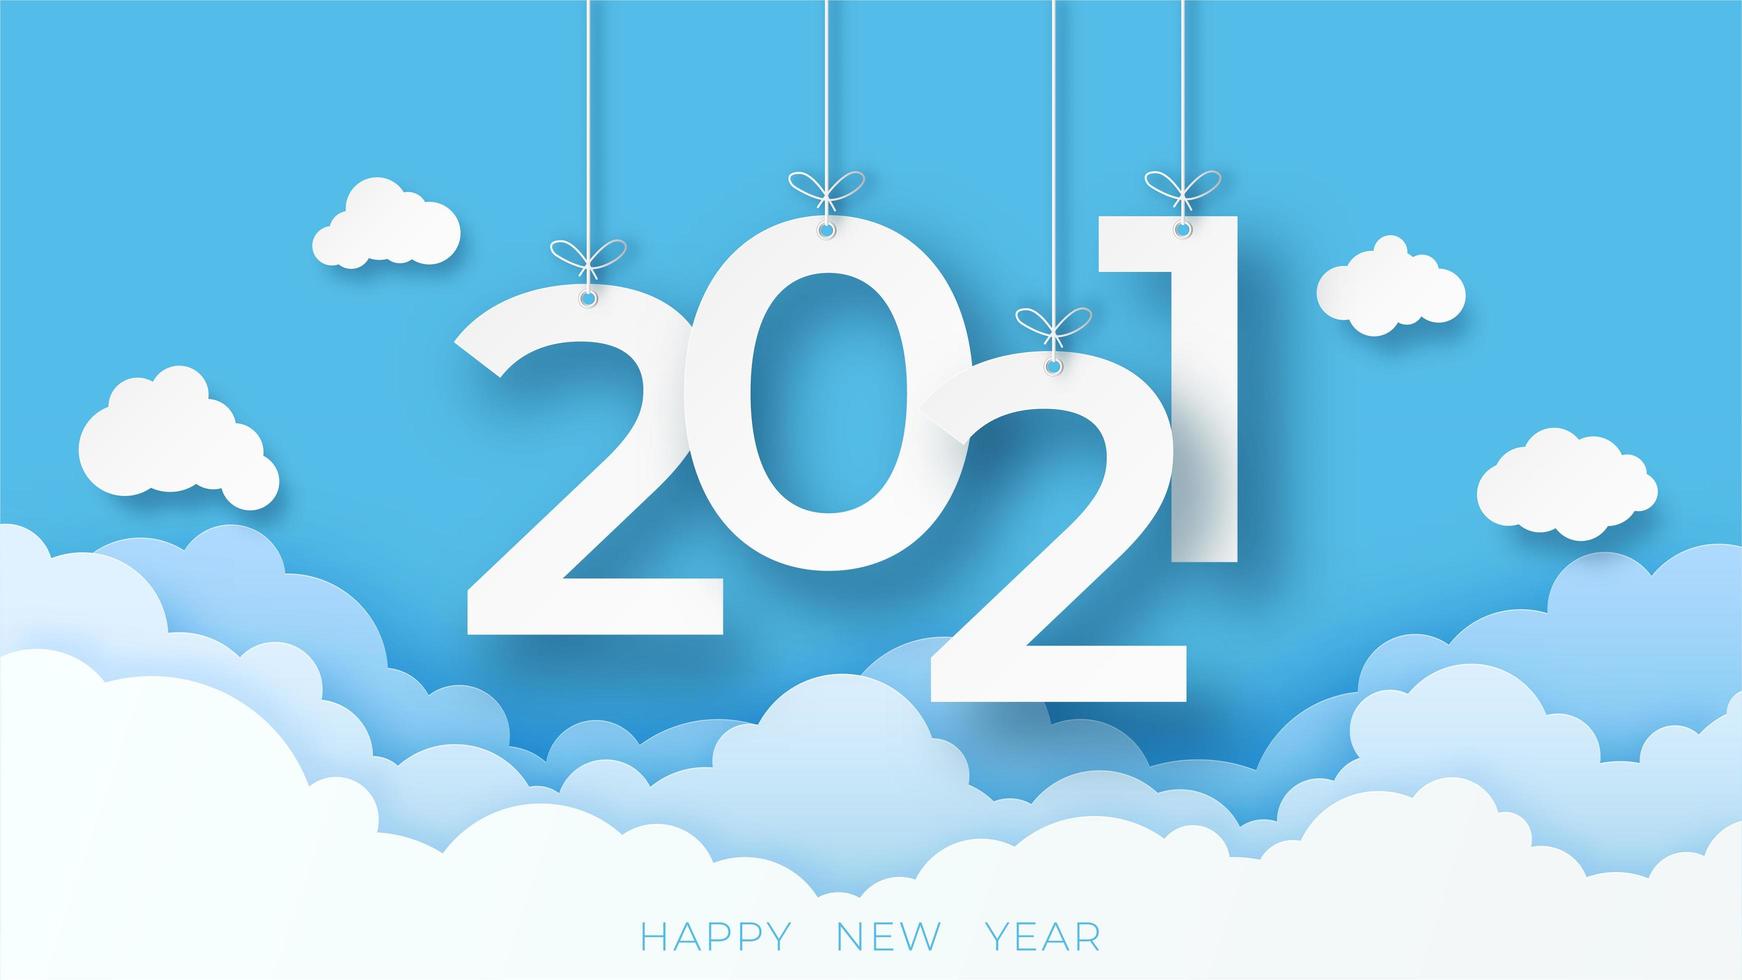 gelukkig nieuwjaar 2021 banner met wolken in papier gesneden stijl vector